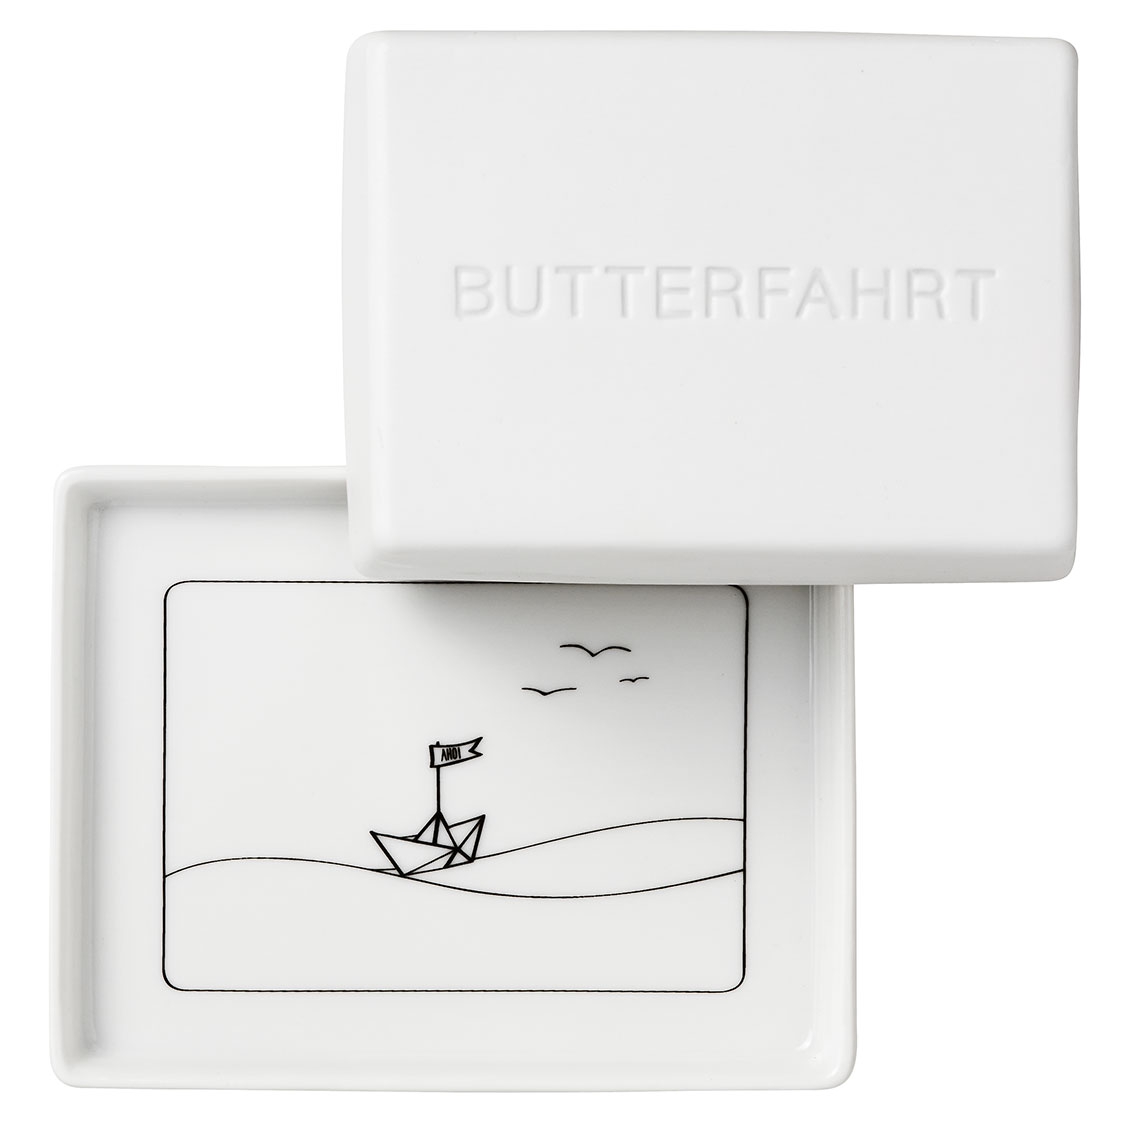 Räder Design - Butterdose "Butterfahrt"